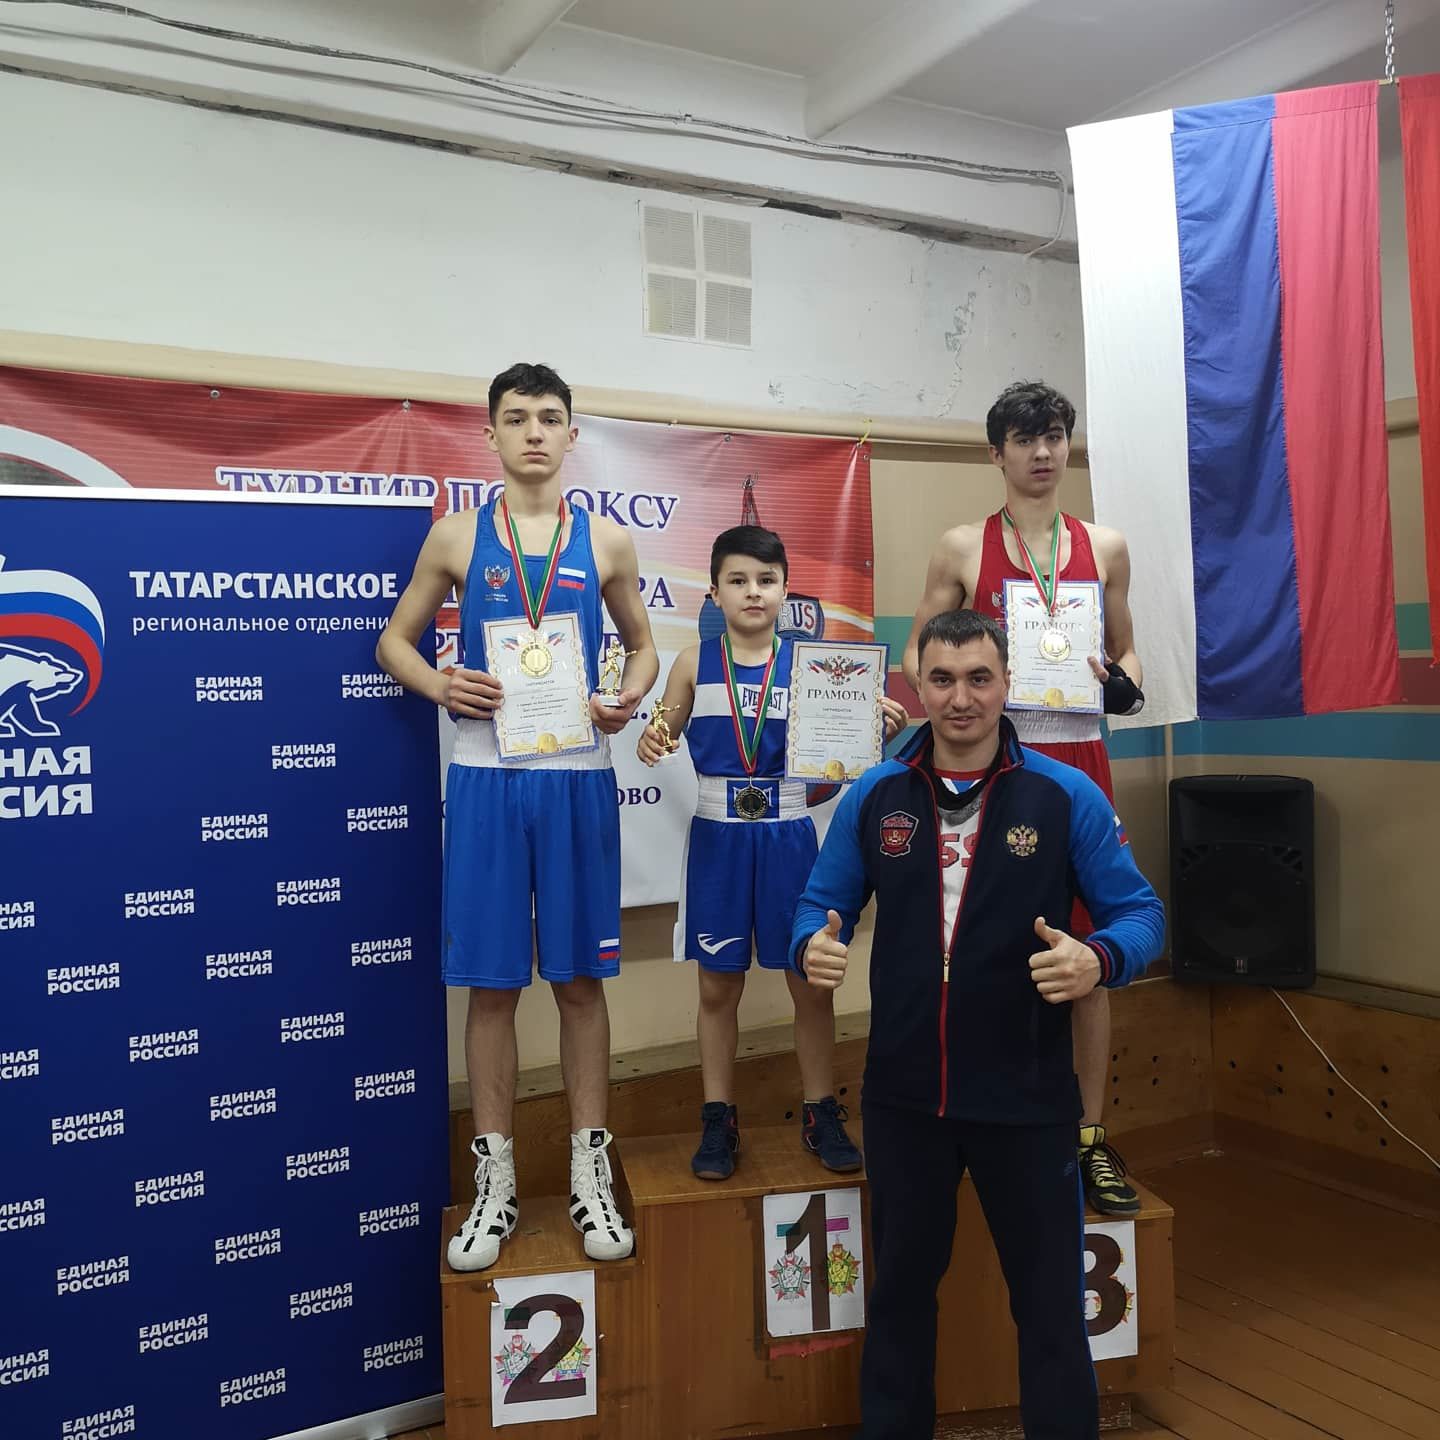 Три юных боксера из Альметьевска завоевали золото на республиканском турнире